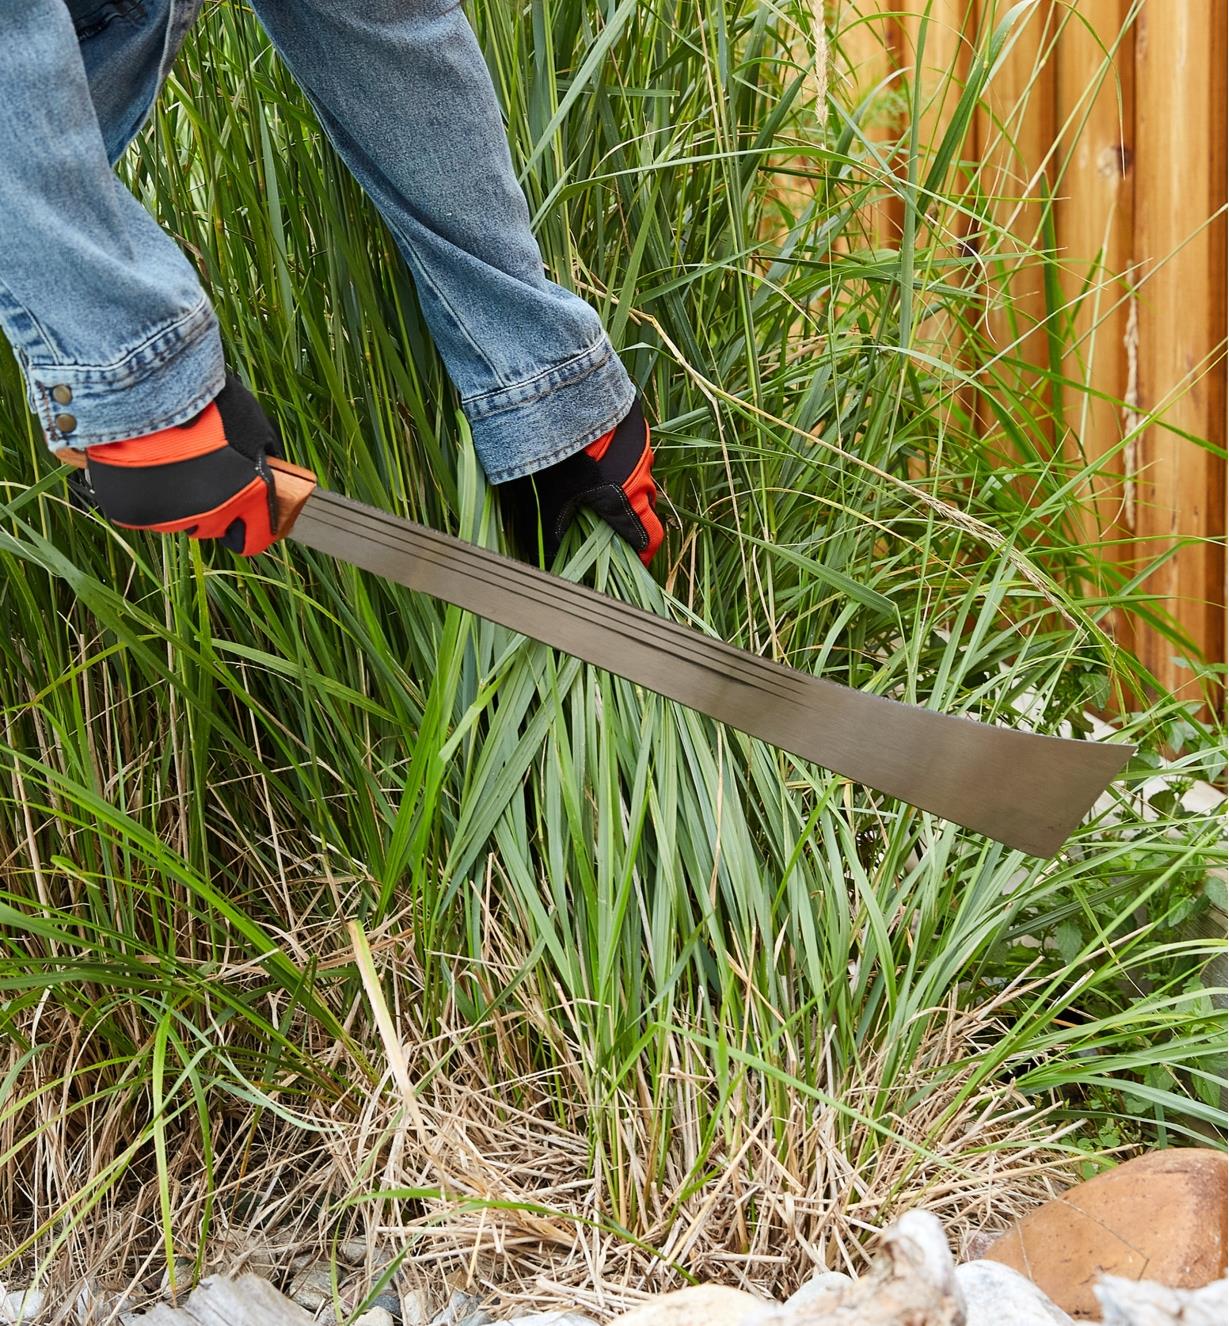 Cutting tall grass with a machete